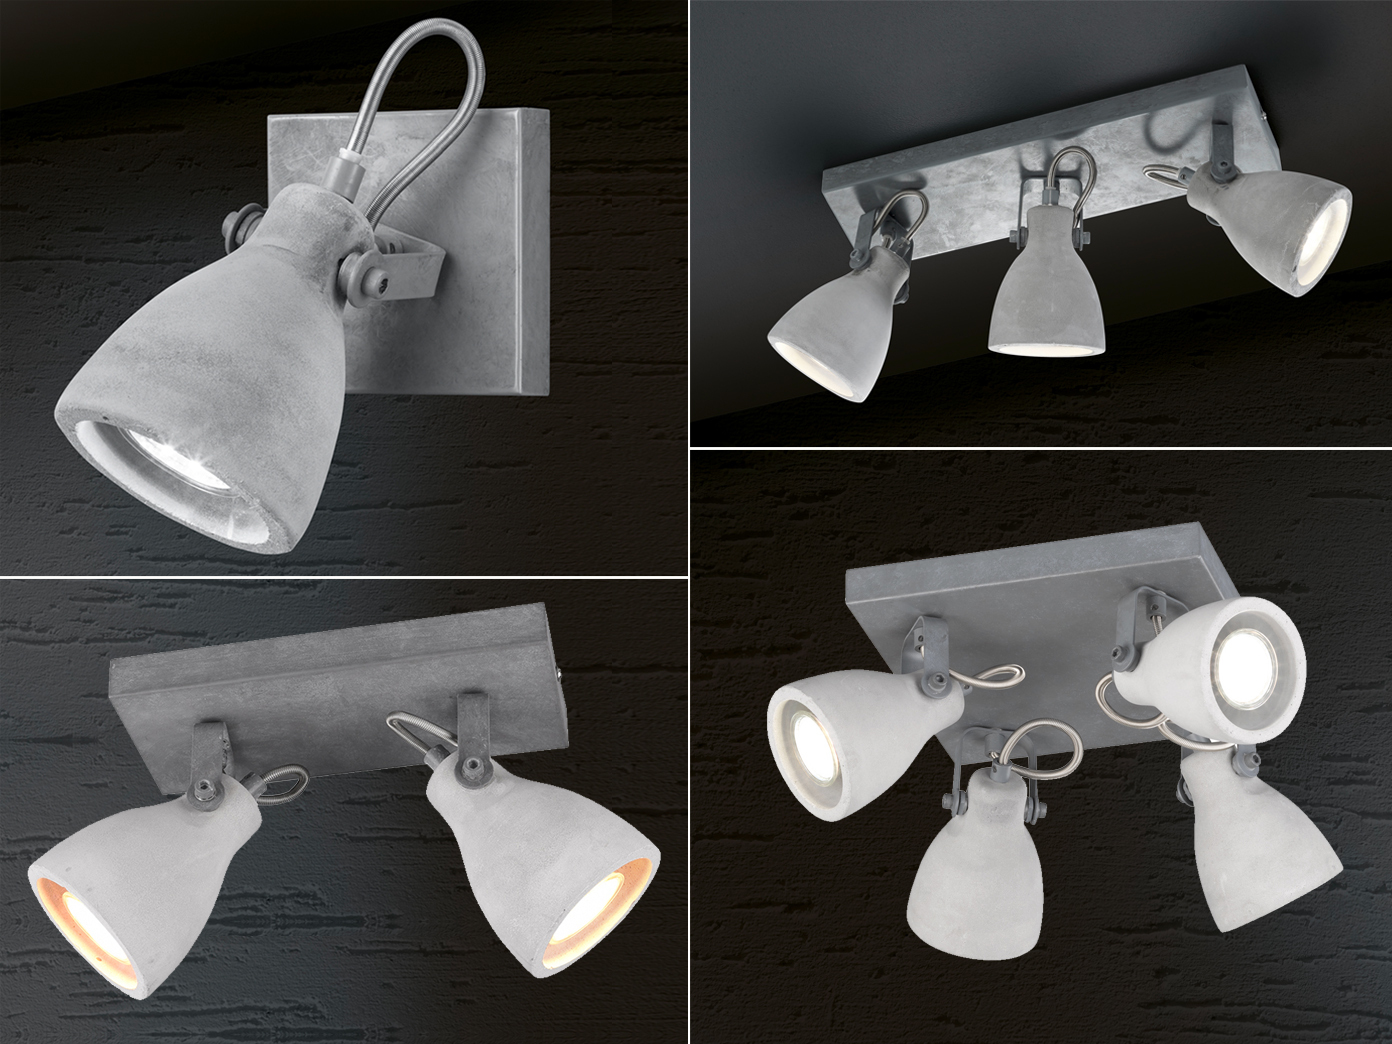 Lampenschirm | Coole Industriedesign Küche eBay Deckenlampen Beton die für Küchenlampen